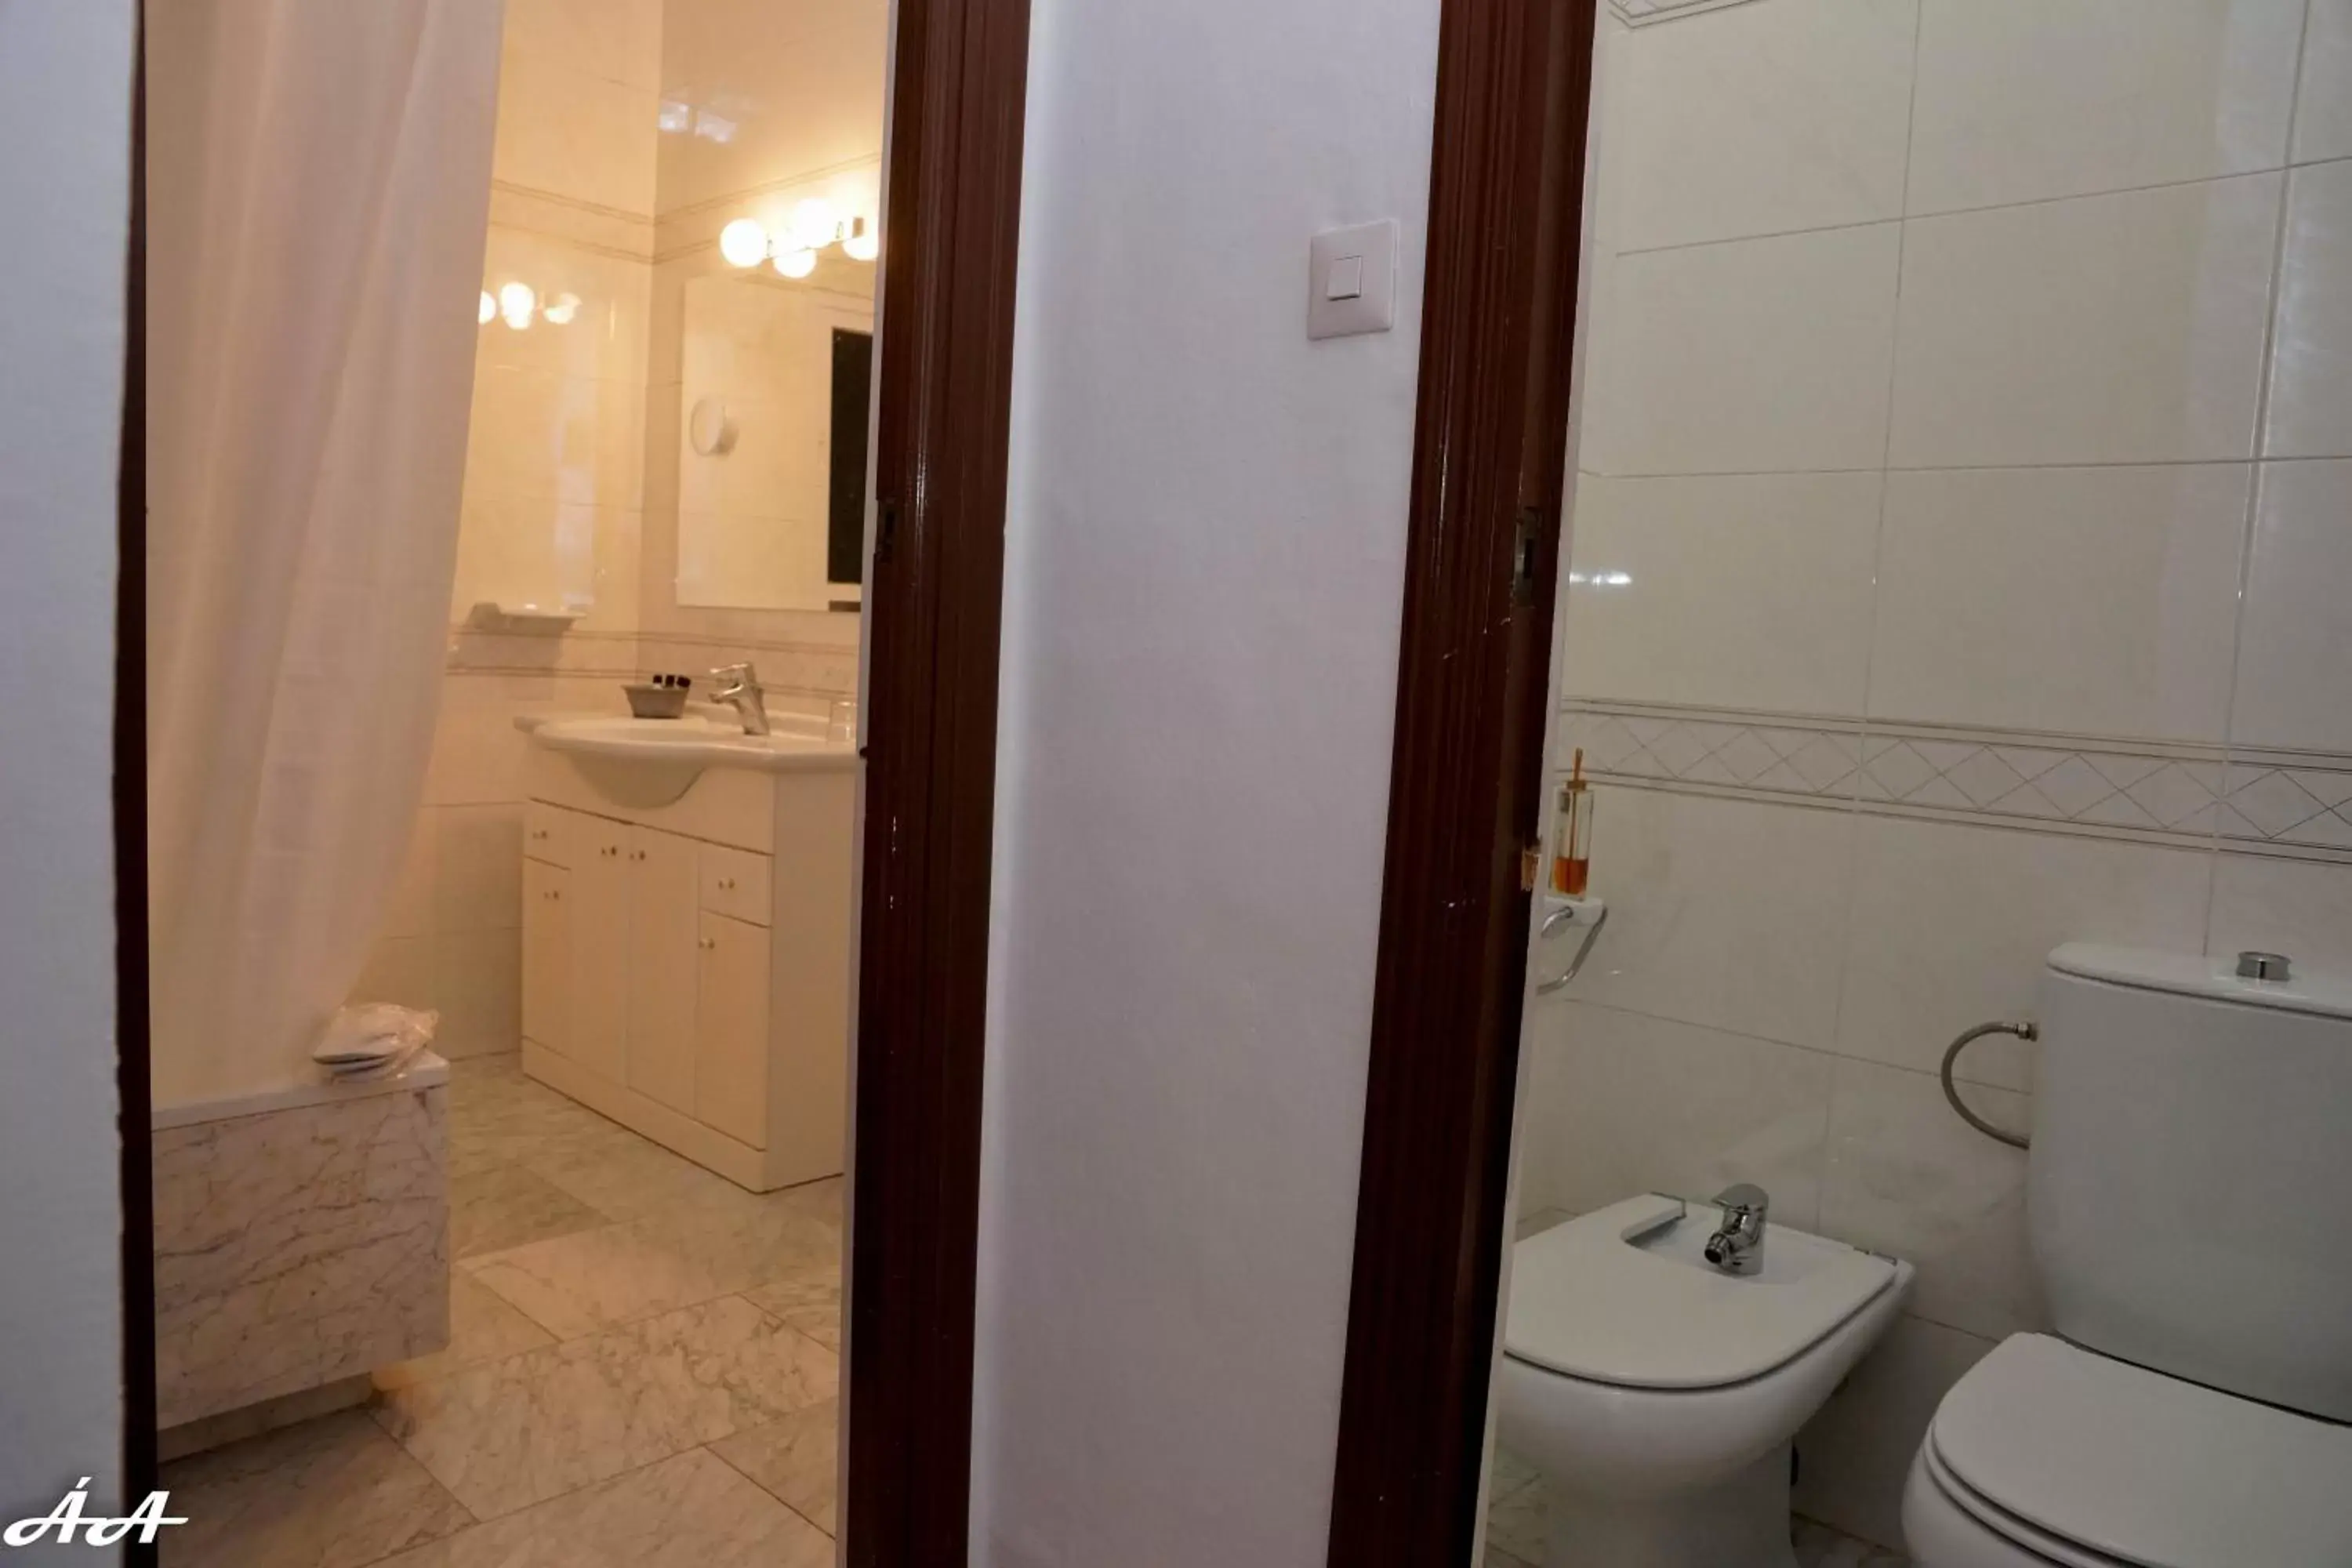 Photo of the whole room, Bathroom in Fuentepiedra Casa Rural Categoría Superior